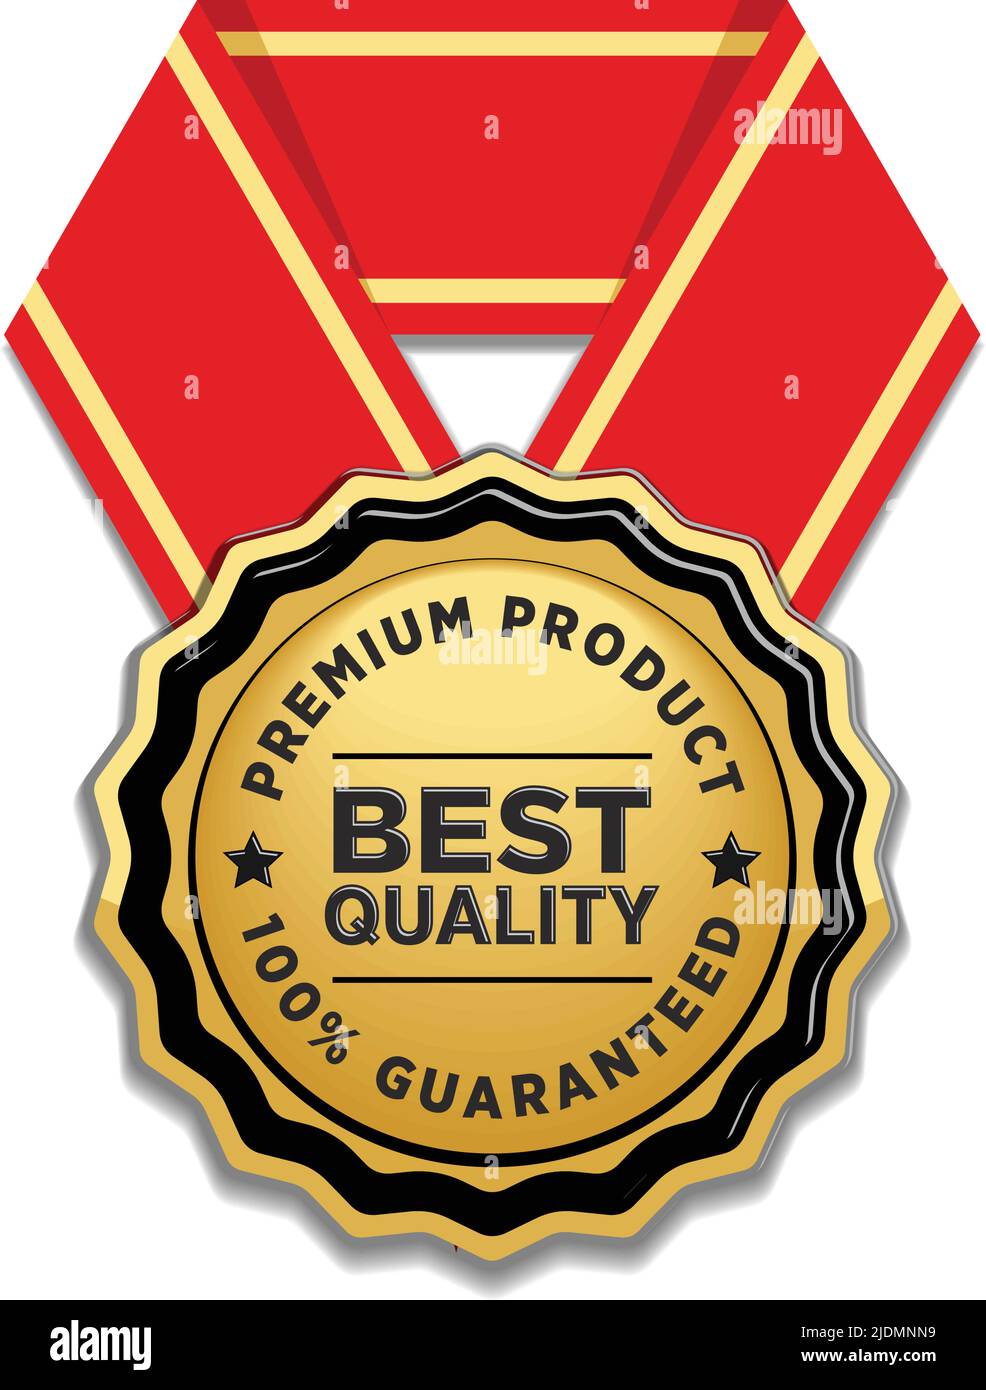 Garantie de qualité de produit haut de gamme. Badge Vector Gold avec ruban rouge sur fond transparent Illustration de Vecteur